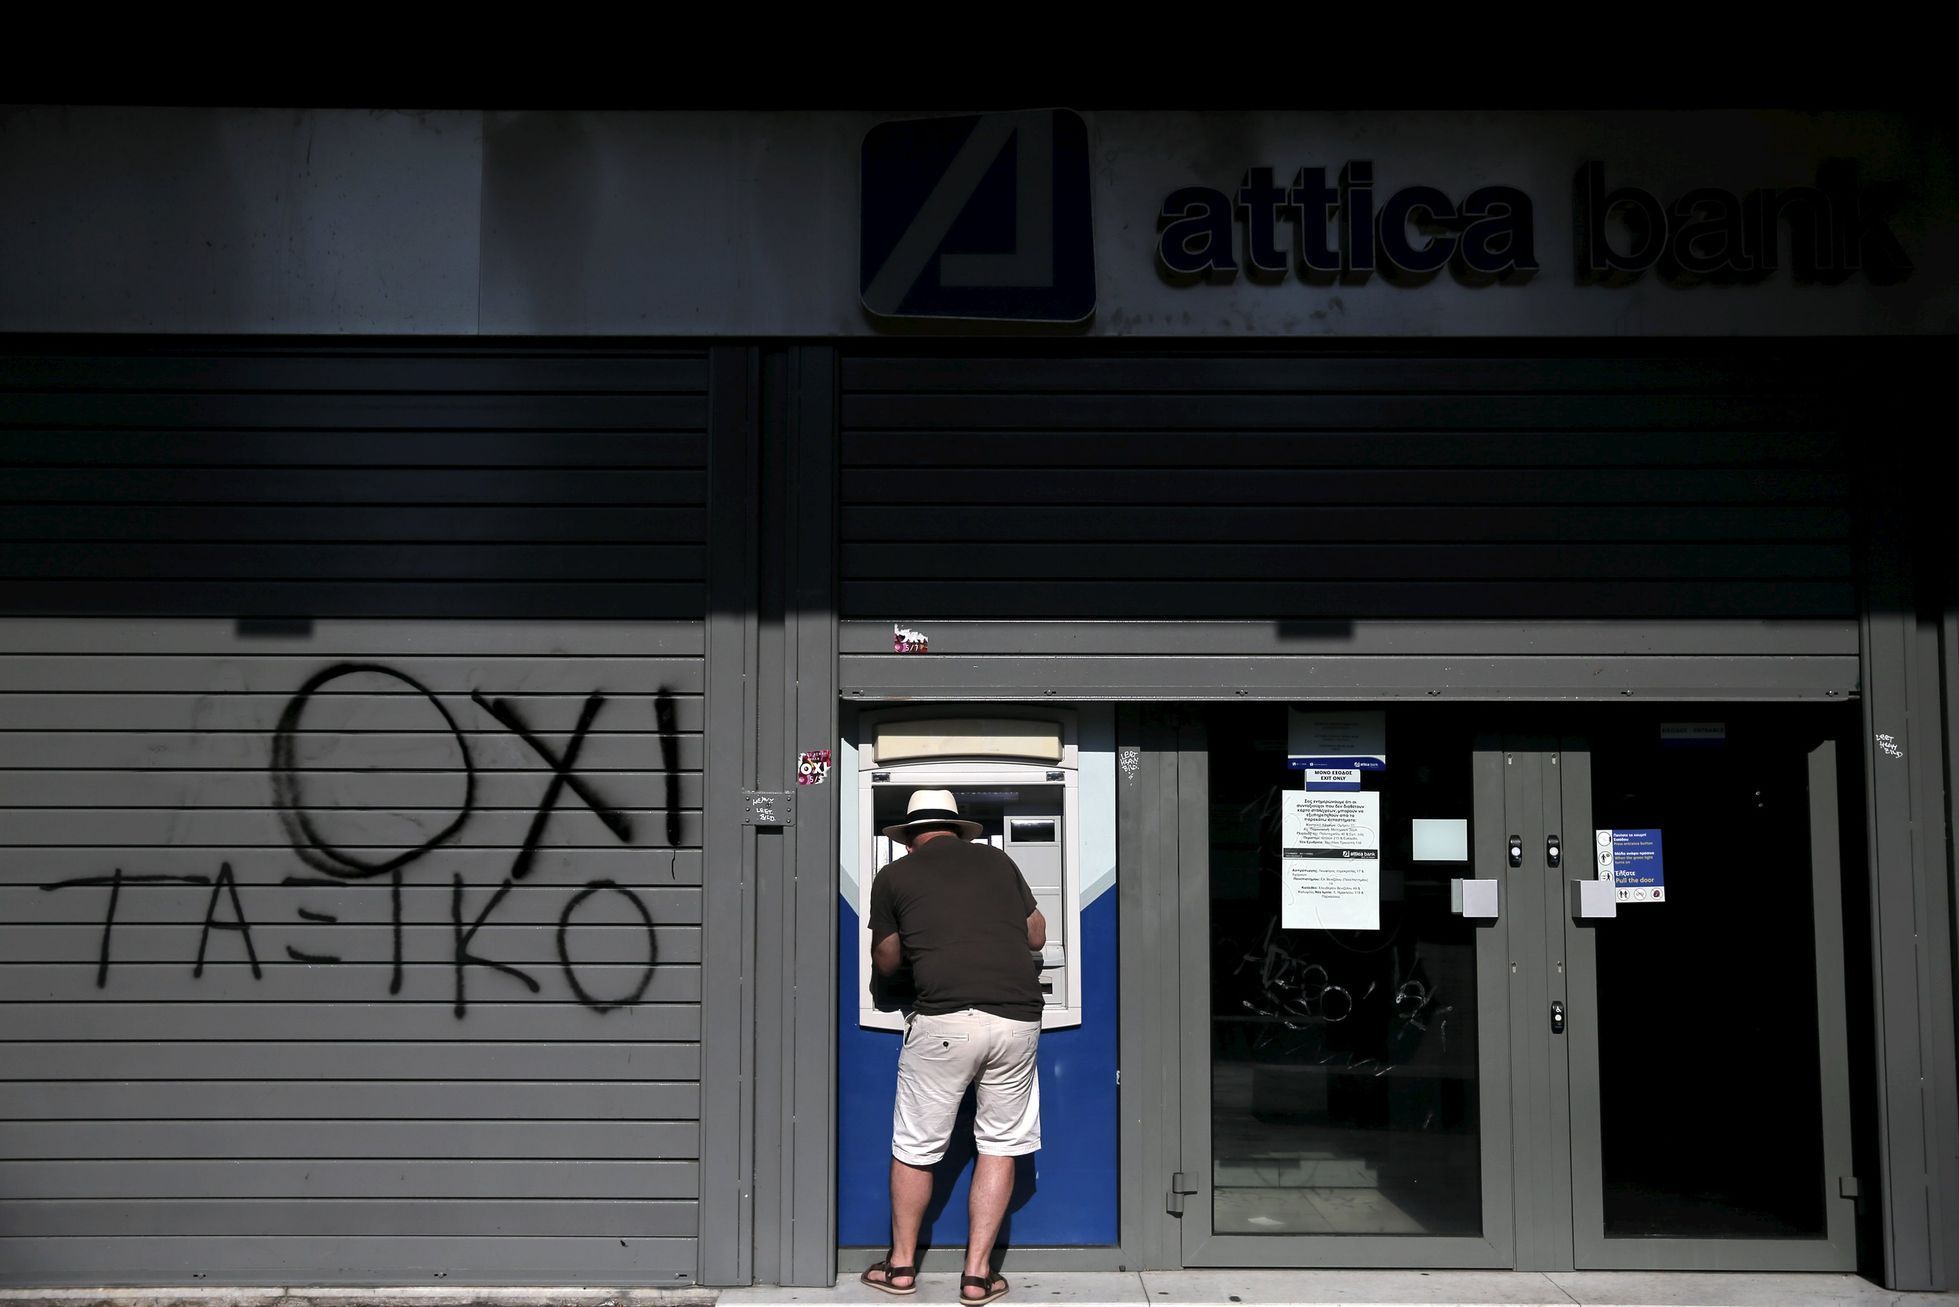 Řecká krize: život v Aténách